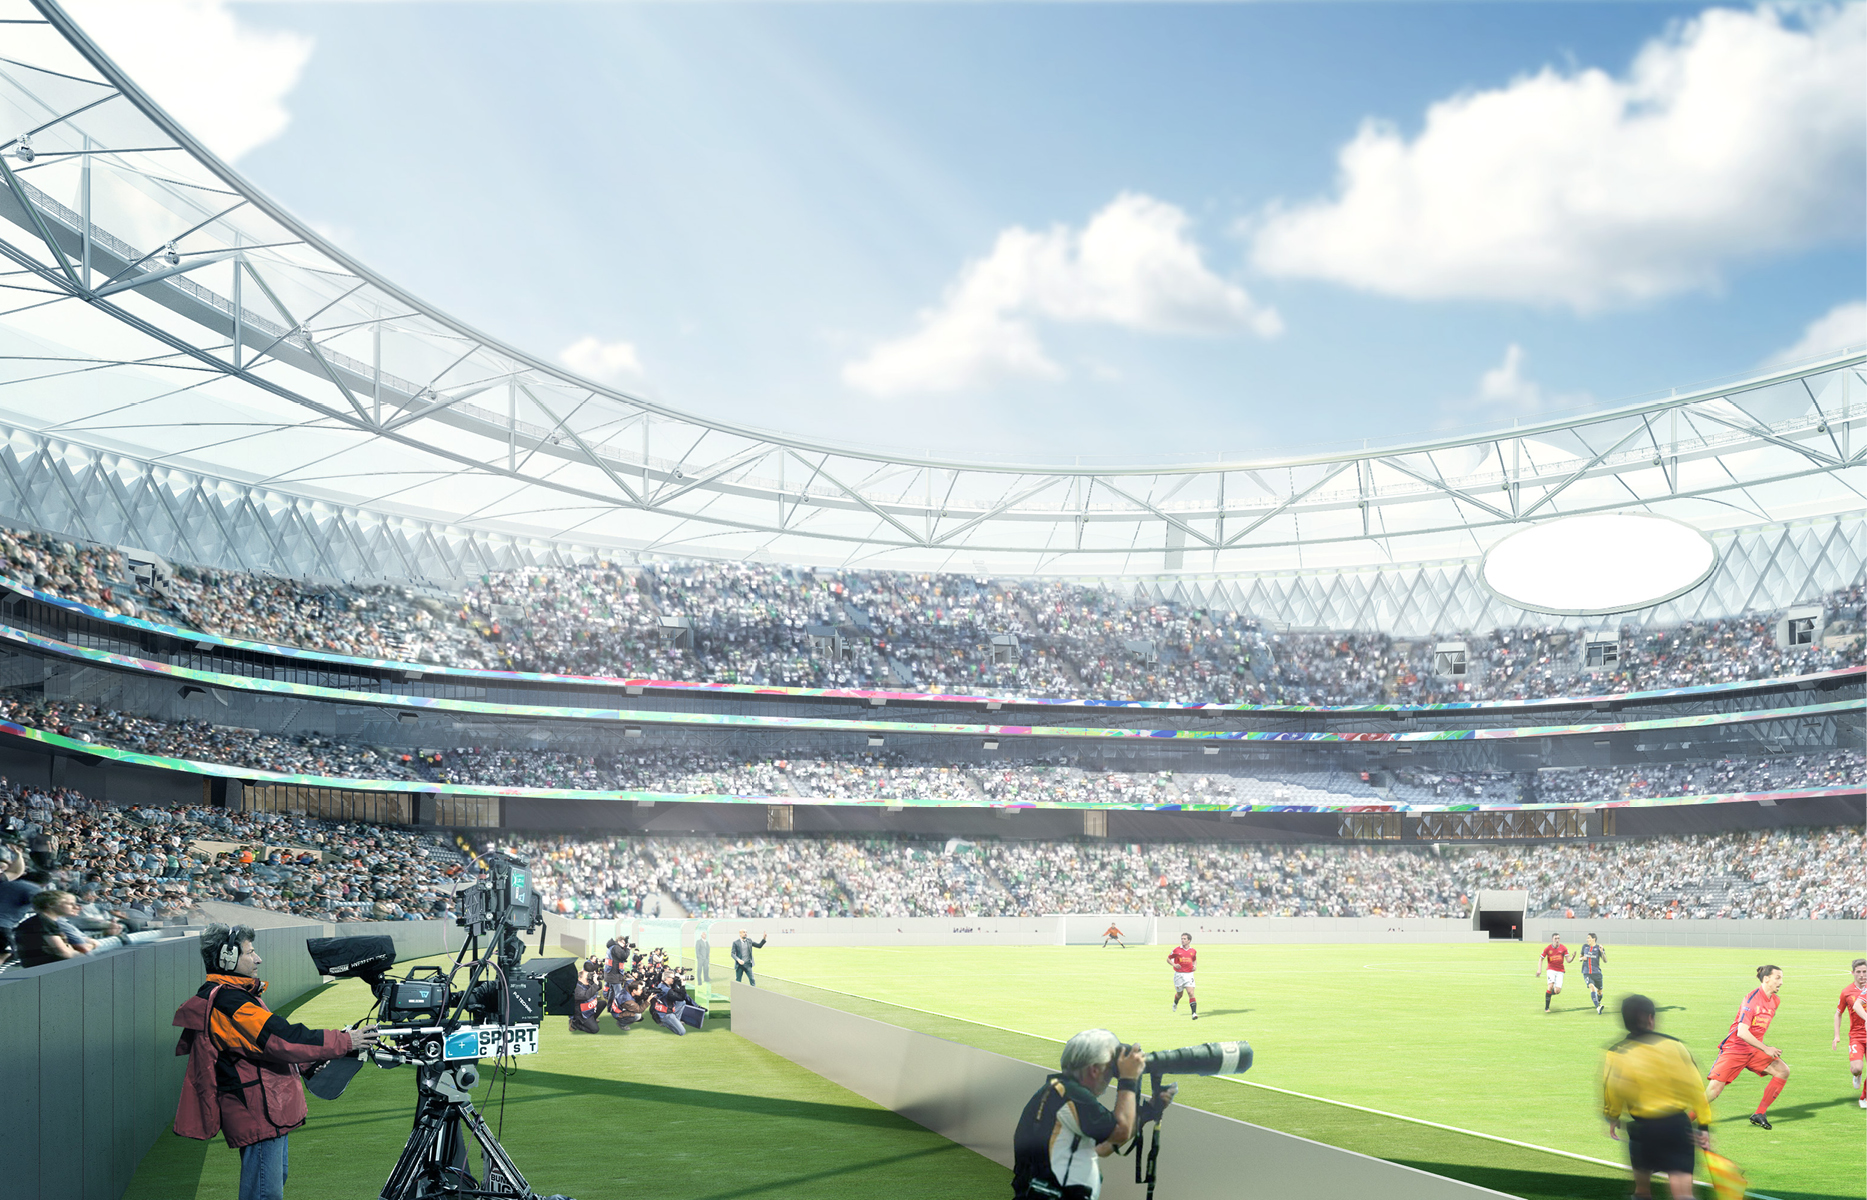 Стадион Мохаммеда бин Рашида станет частью проекта Sports Innovation Lab, который призван превратить Дубай в один из ведущих спортивных городов мира. Так, новая арена сможет принимать не только футбольные матчи, но и другие виды спорта